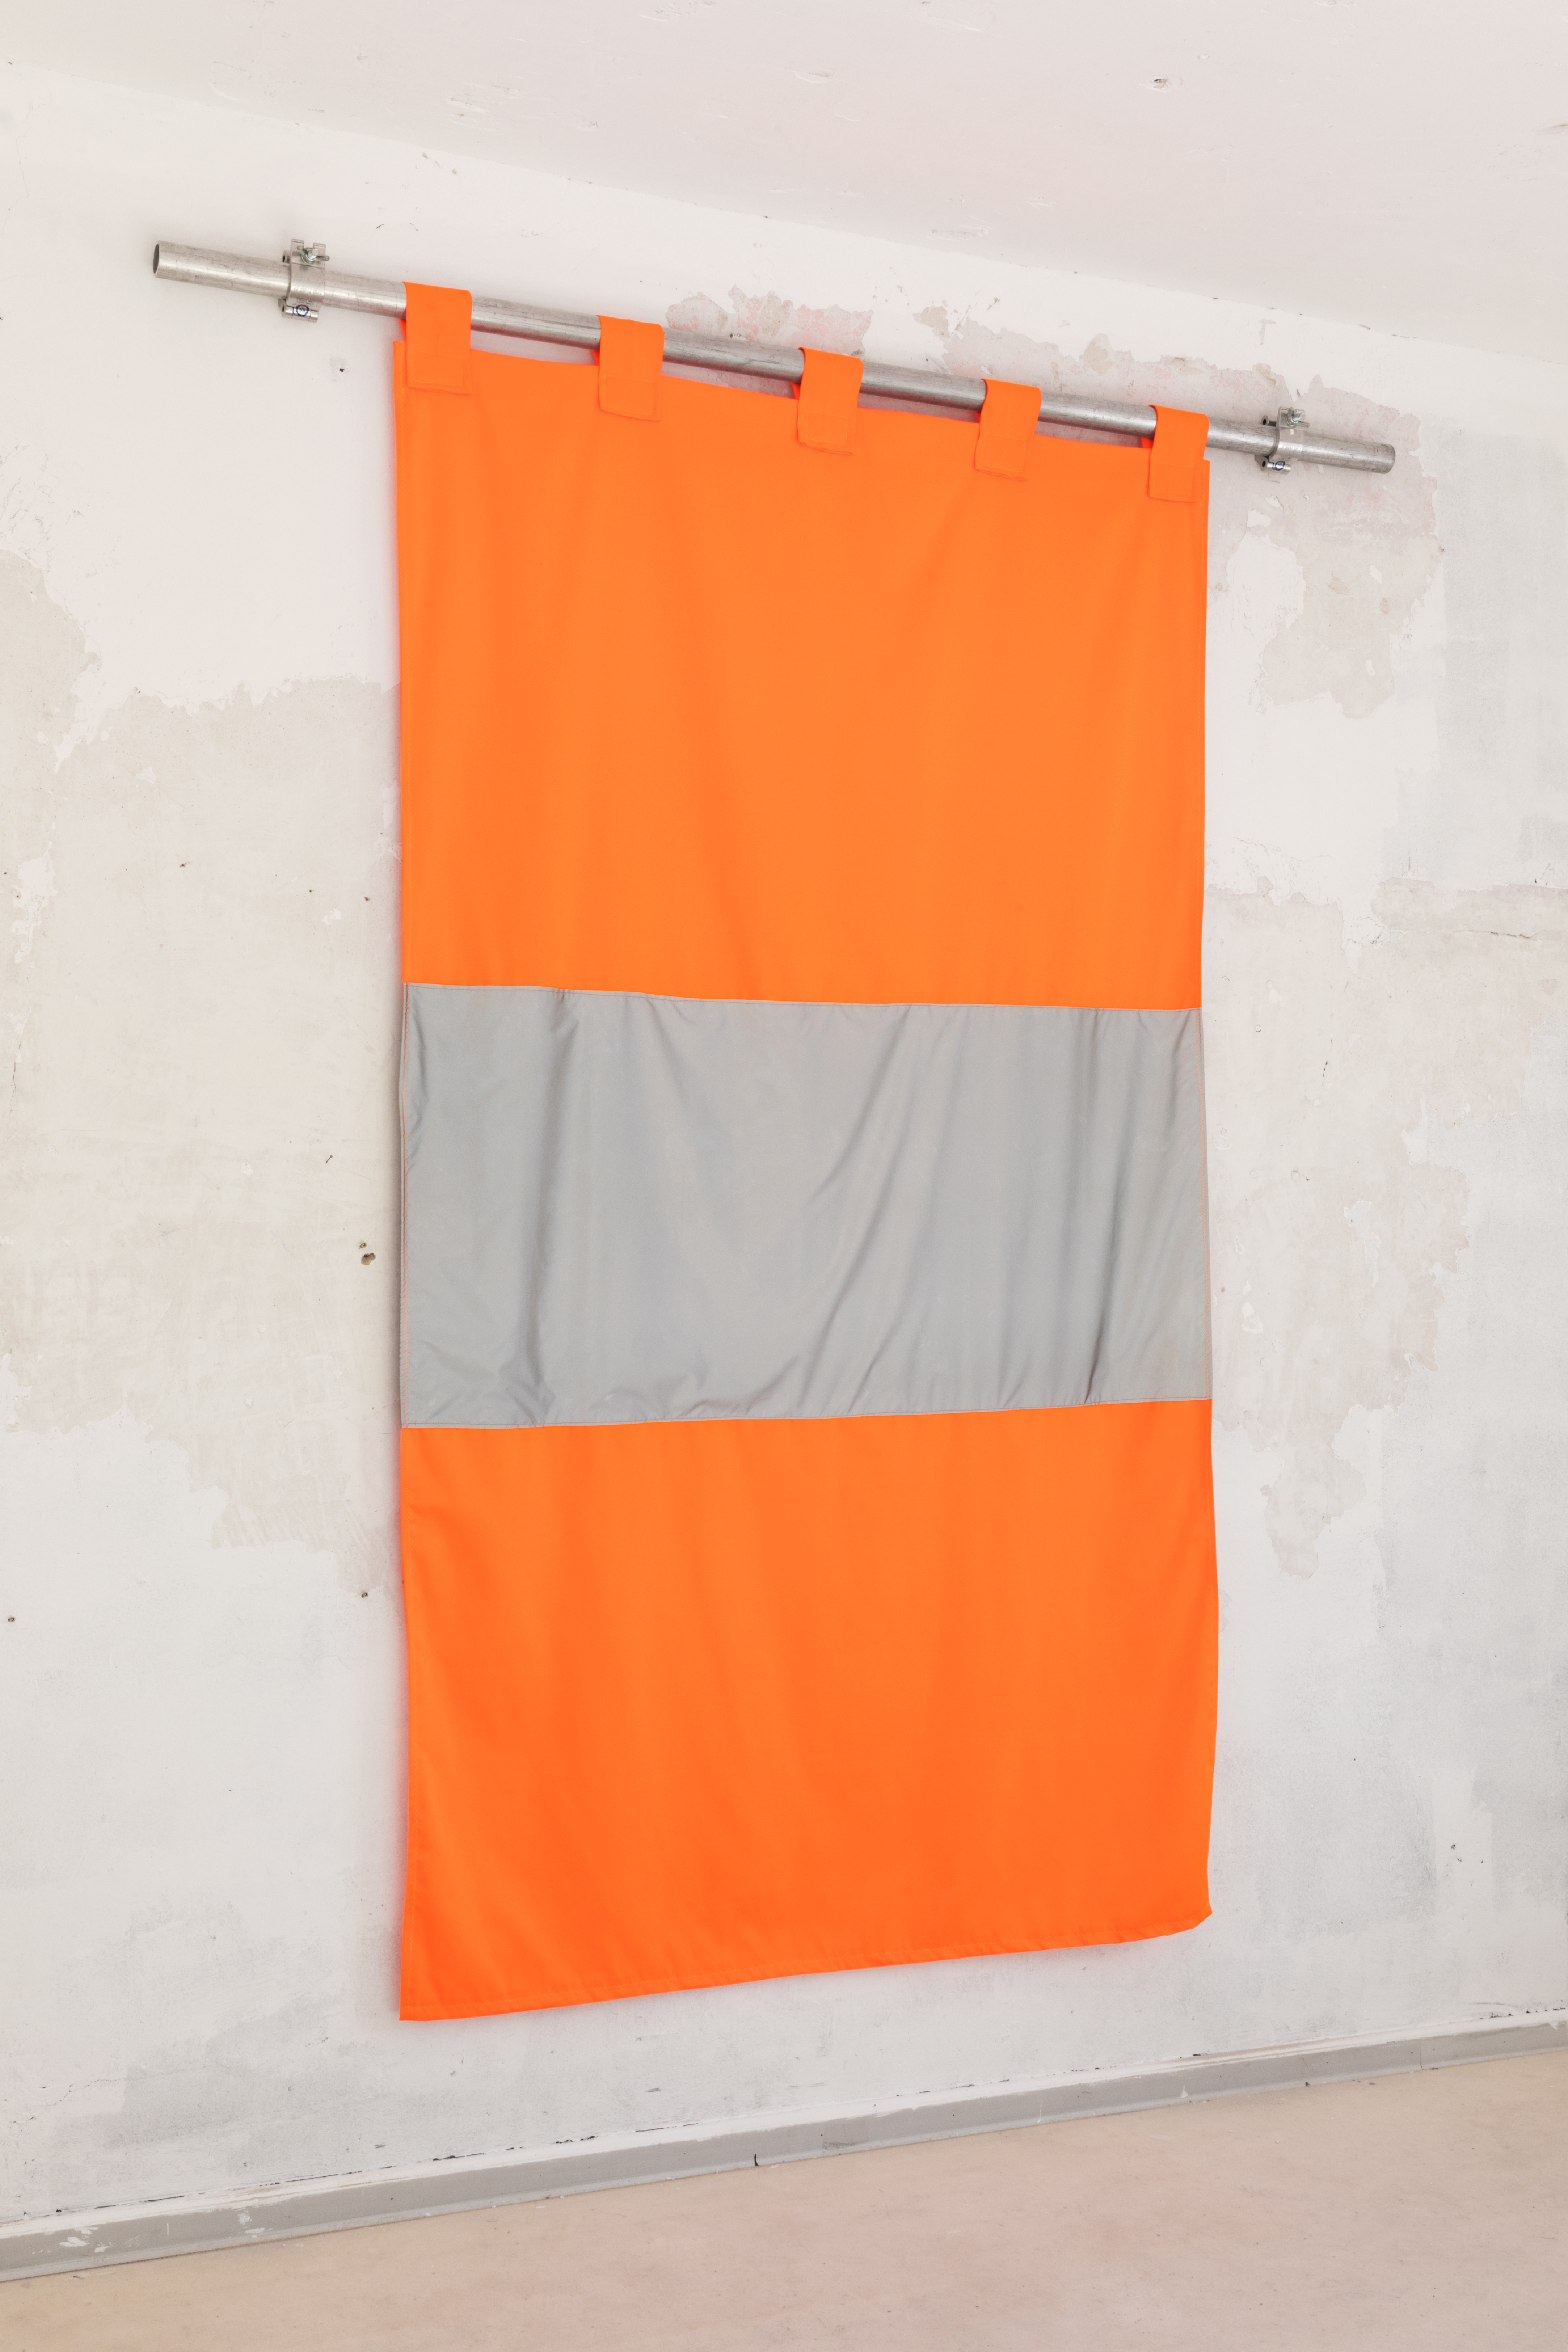 Oliver-Selim Boualam,*Warnwesten Vorhang (Safety vest curtain)*, Neon Garbartex, reflective fabric, 300×250cm